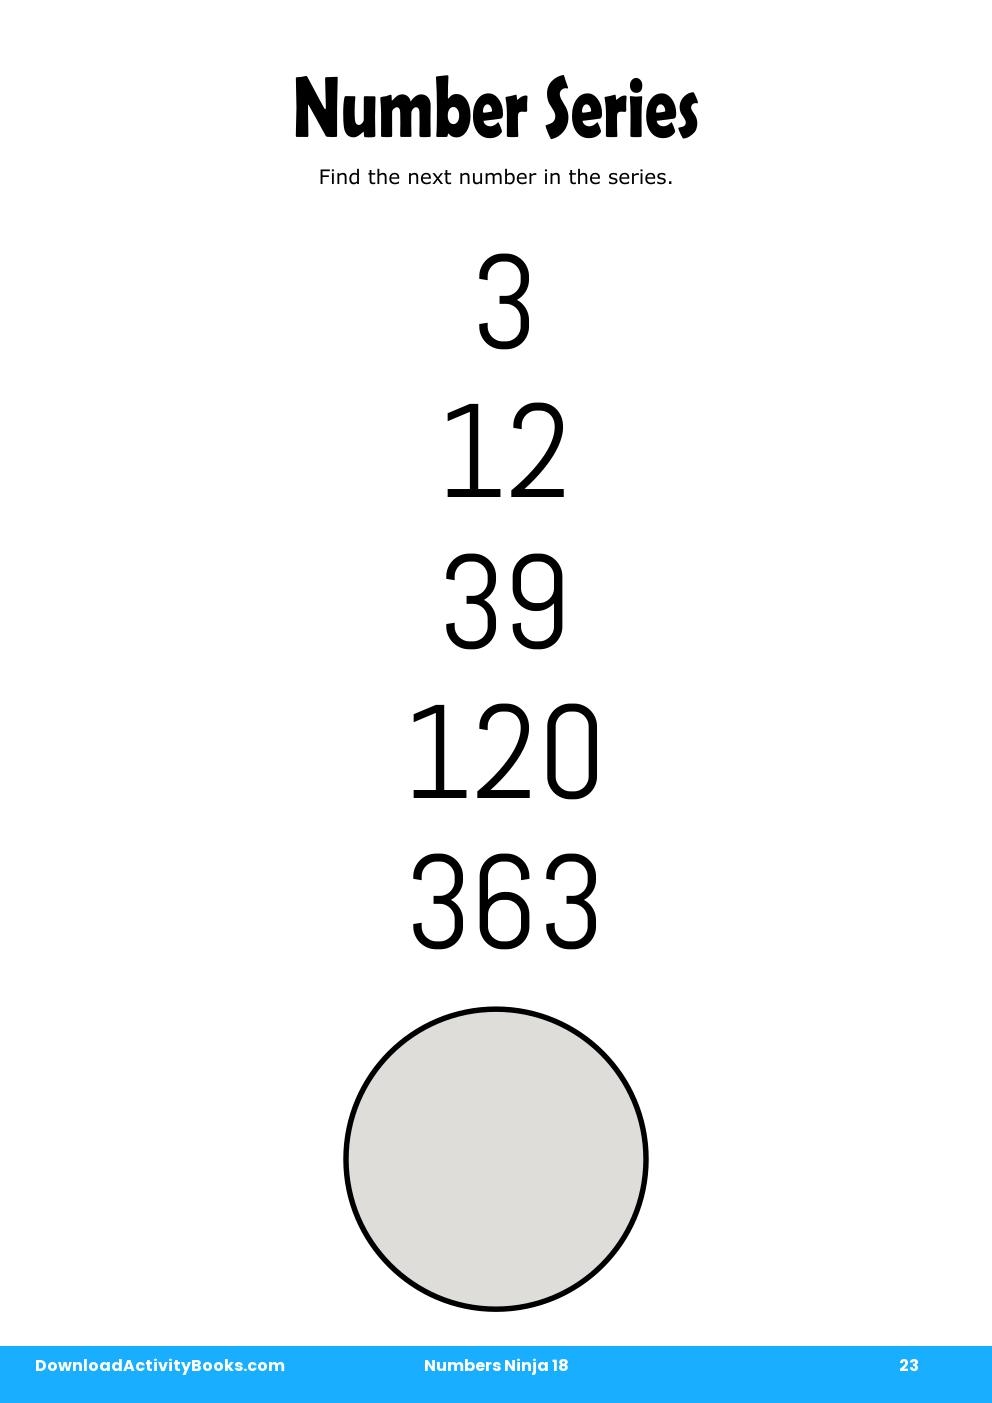 Number Series in Numbers Ninja 18